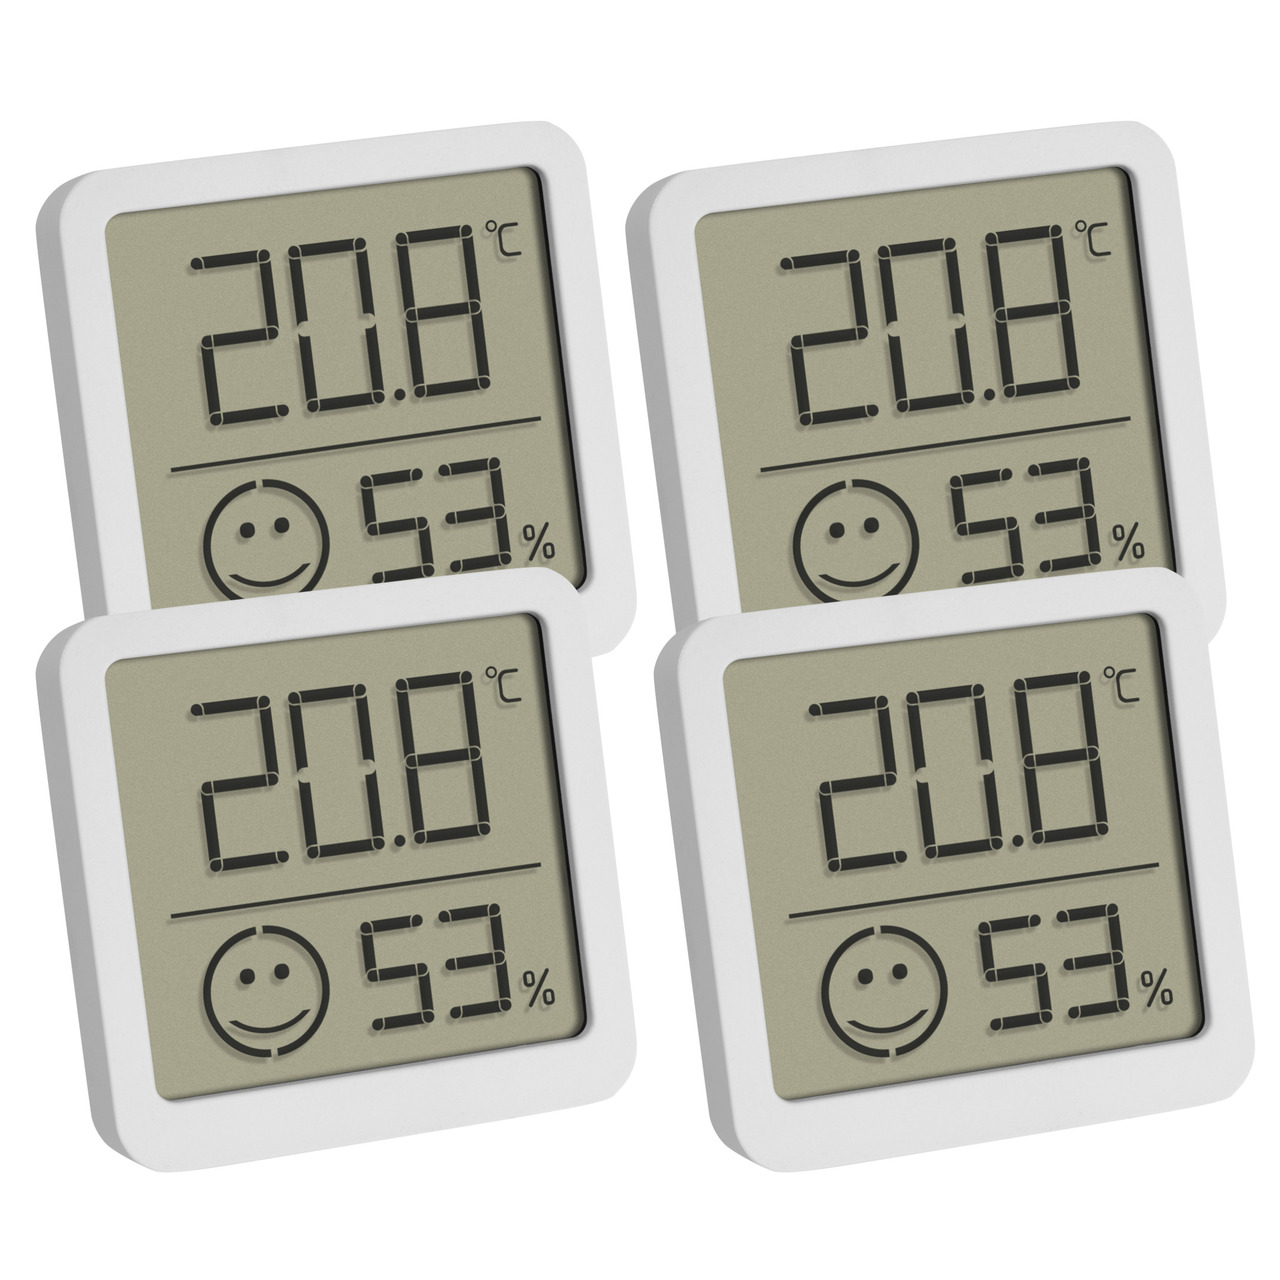 TFA 4er-Set Thermo-Hygrometer mit Smiley-Klimakomfortanzeige- Raumtemperatur- Luftfeuchte- weiss